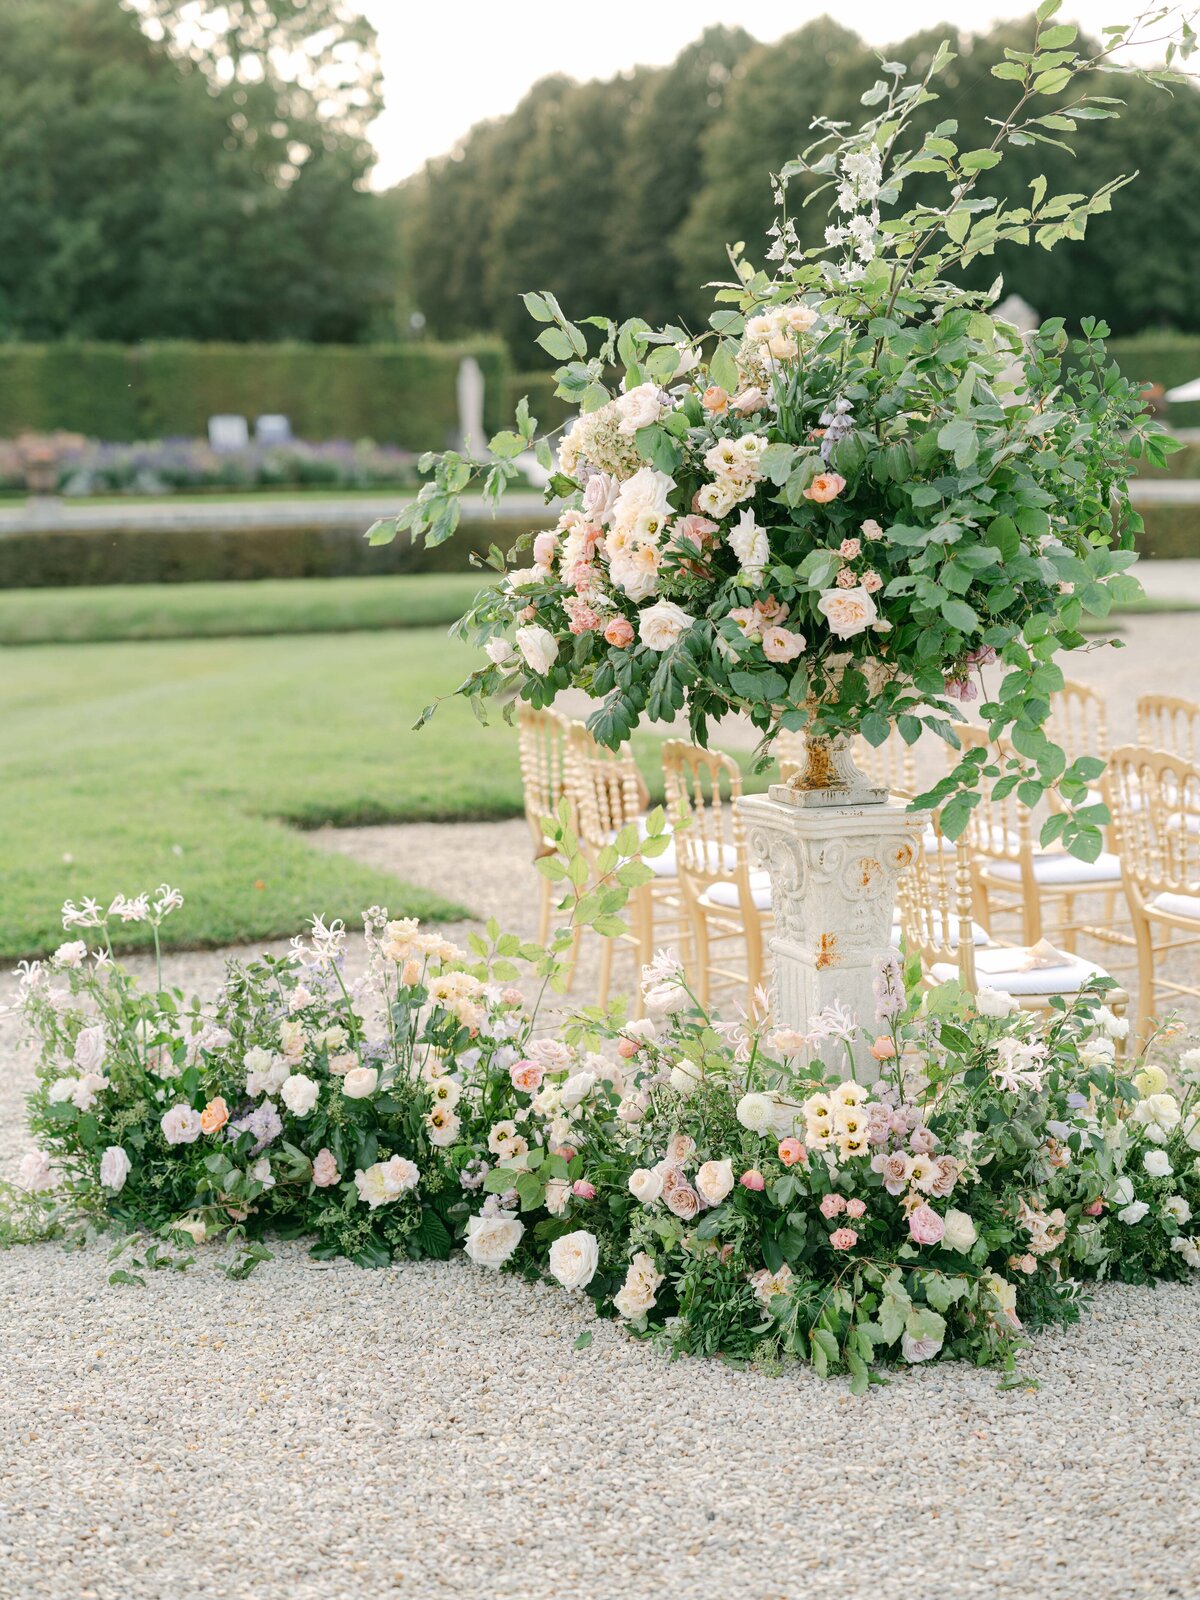 Chateau-Vaux-le-vicomte-wedding-florist-FLORAISON38